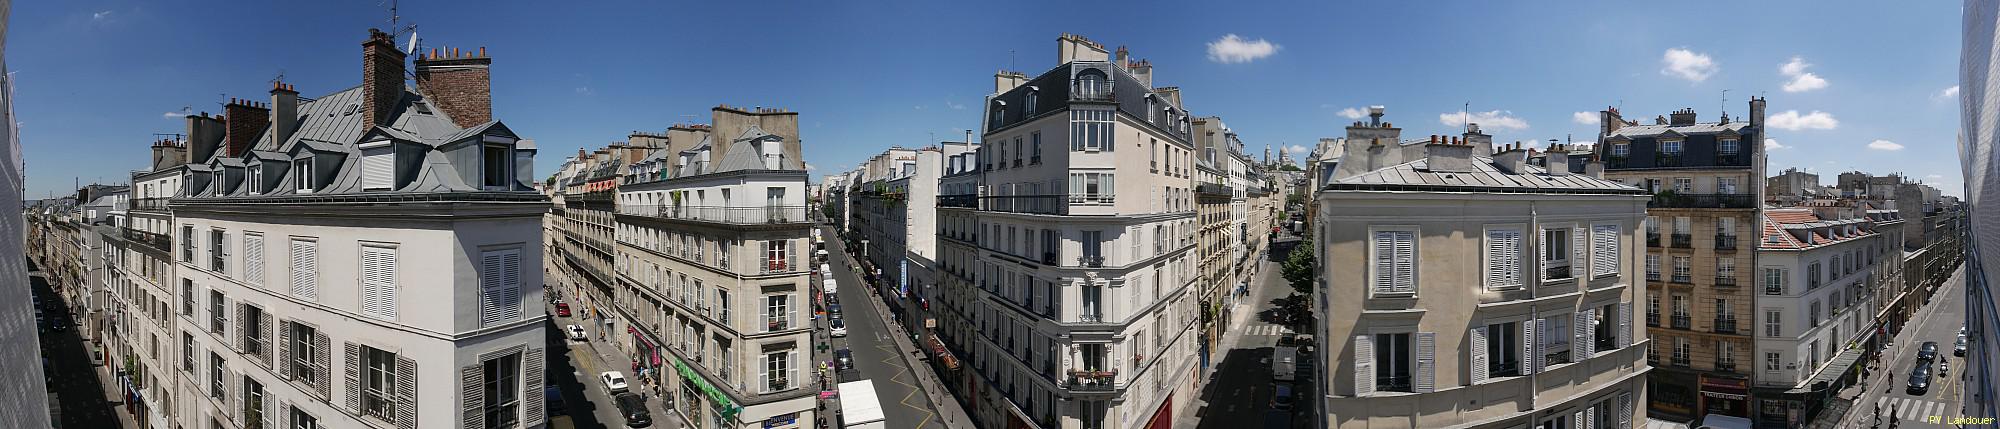 Paris vu d'en haut,  59 rue Notre-Dame de Lorette